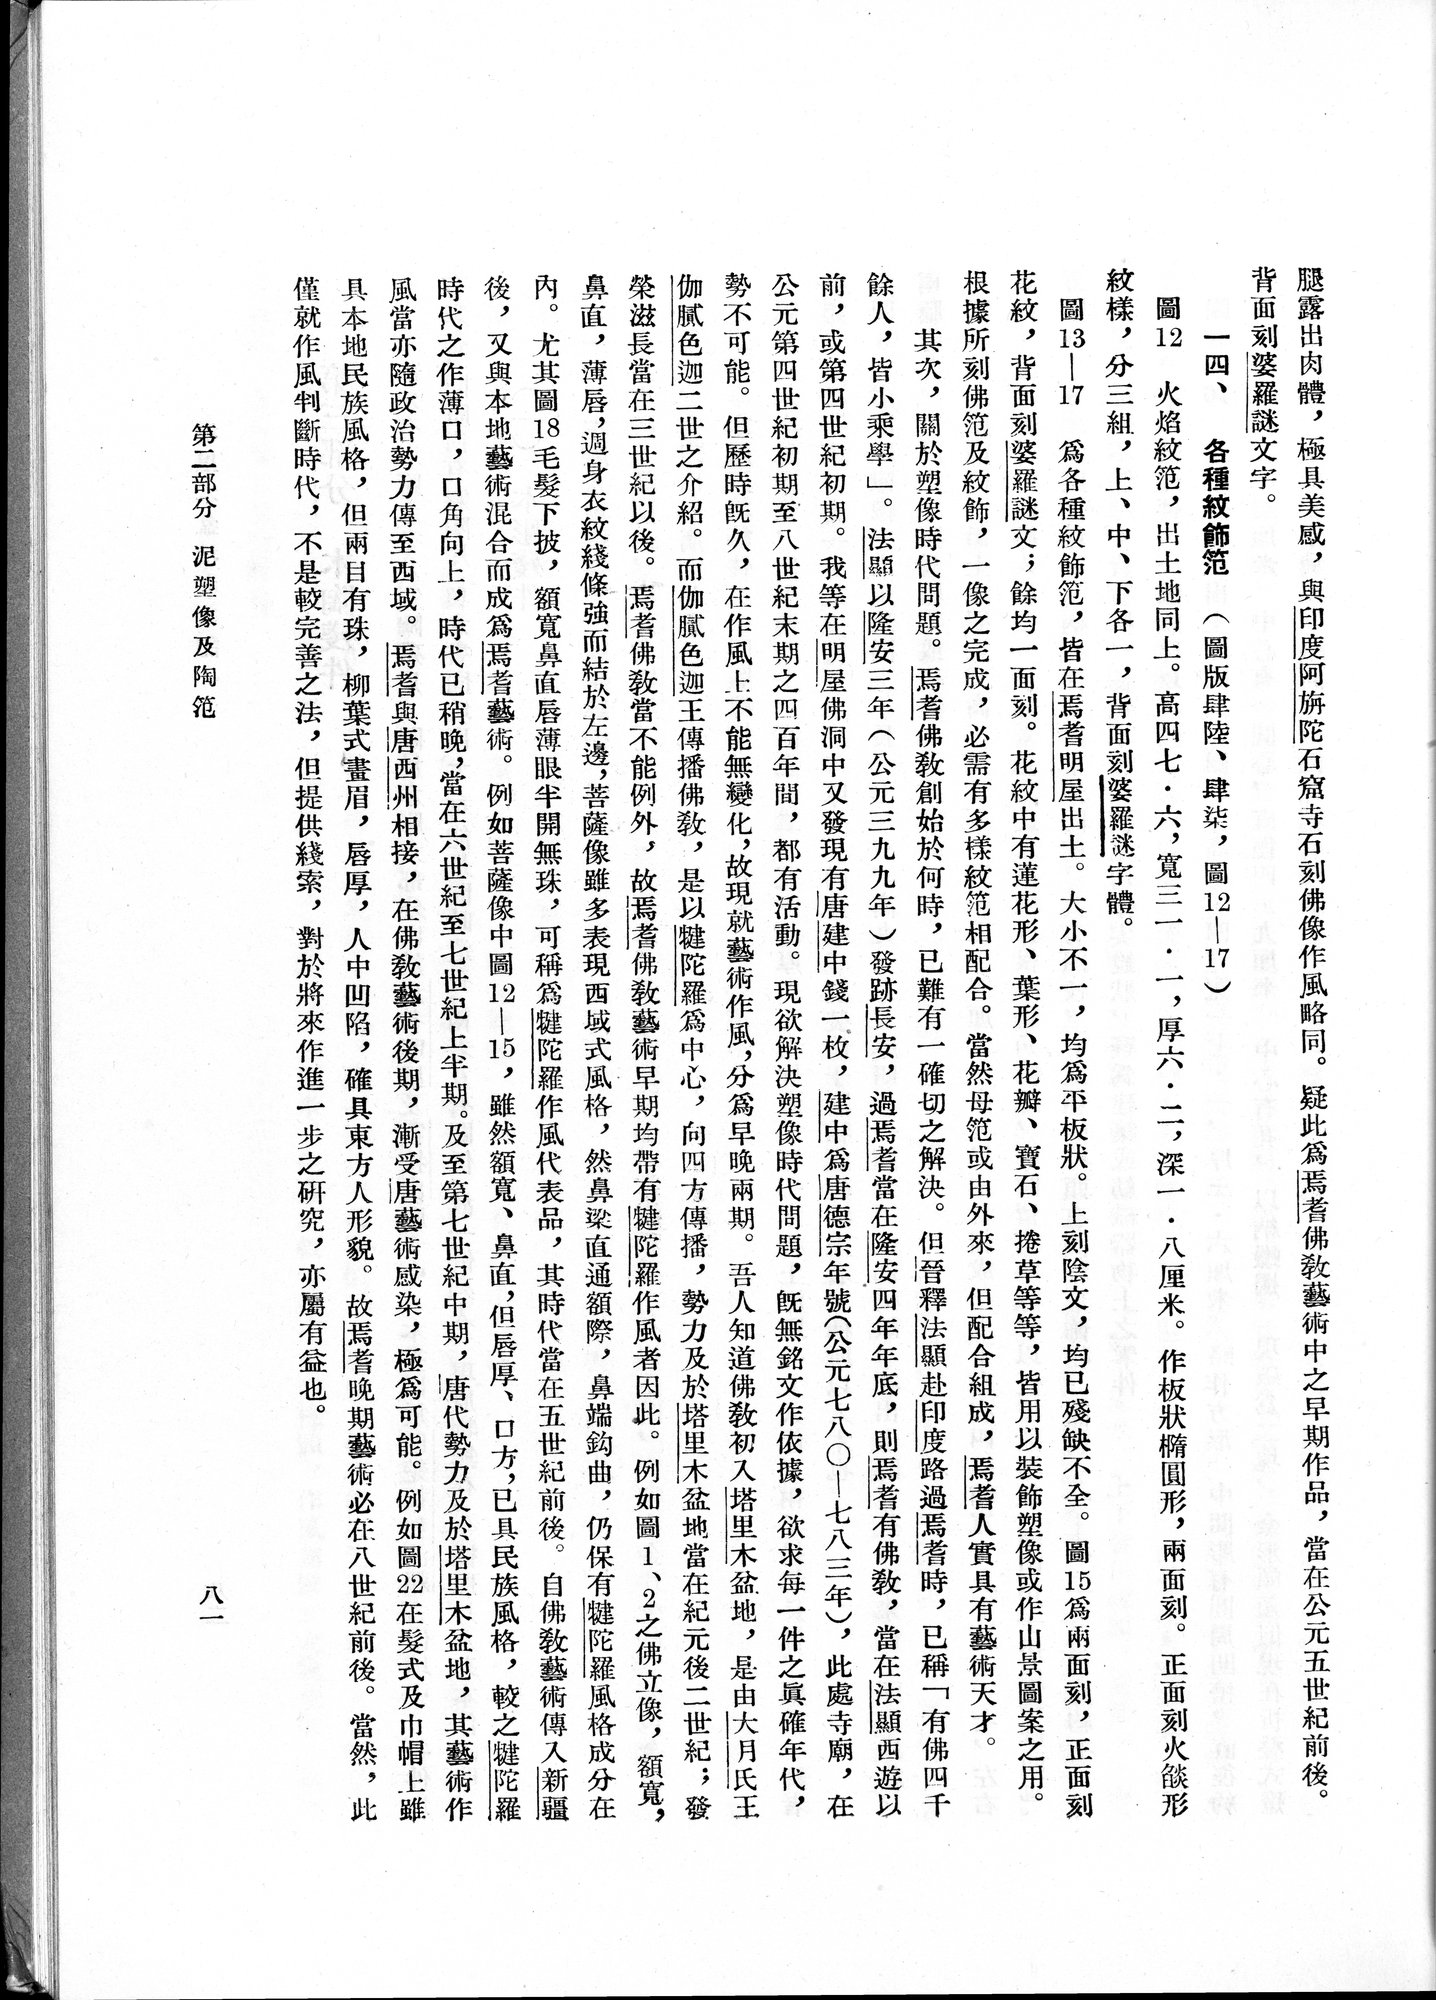 塔里木盆地考古記 : vol.1 / 145 ページ（白黒高解像度画像）